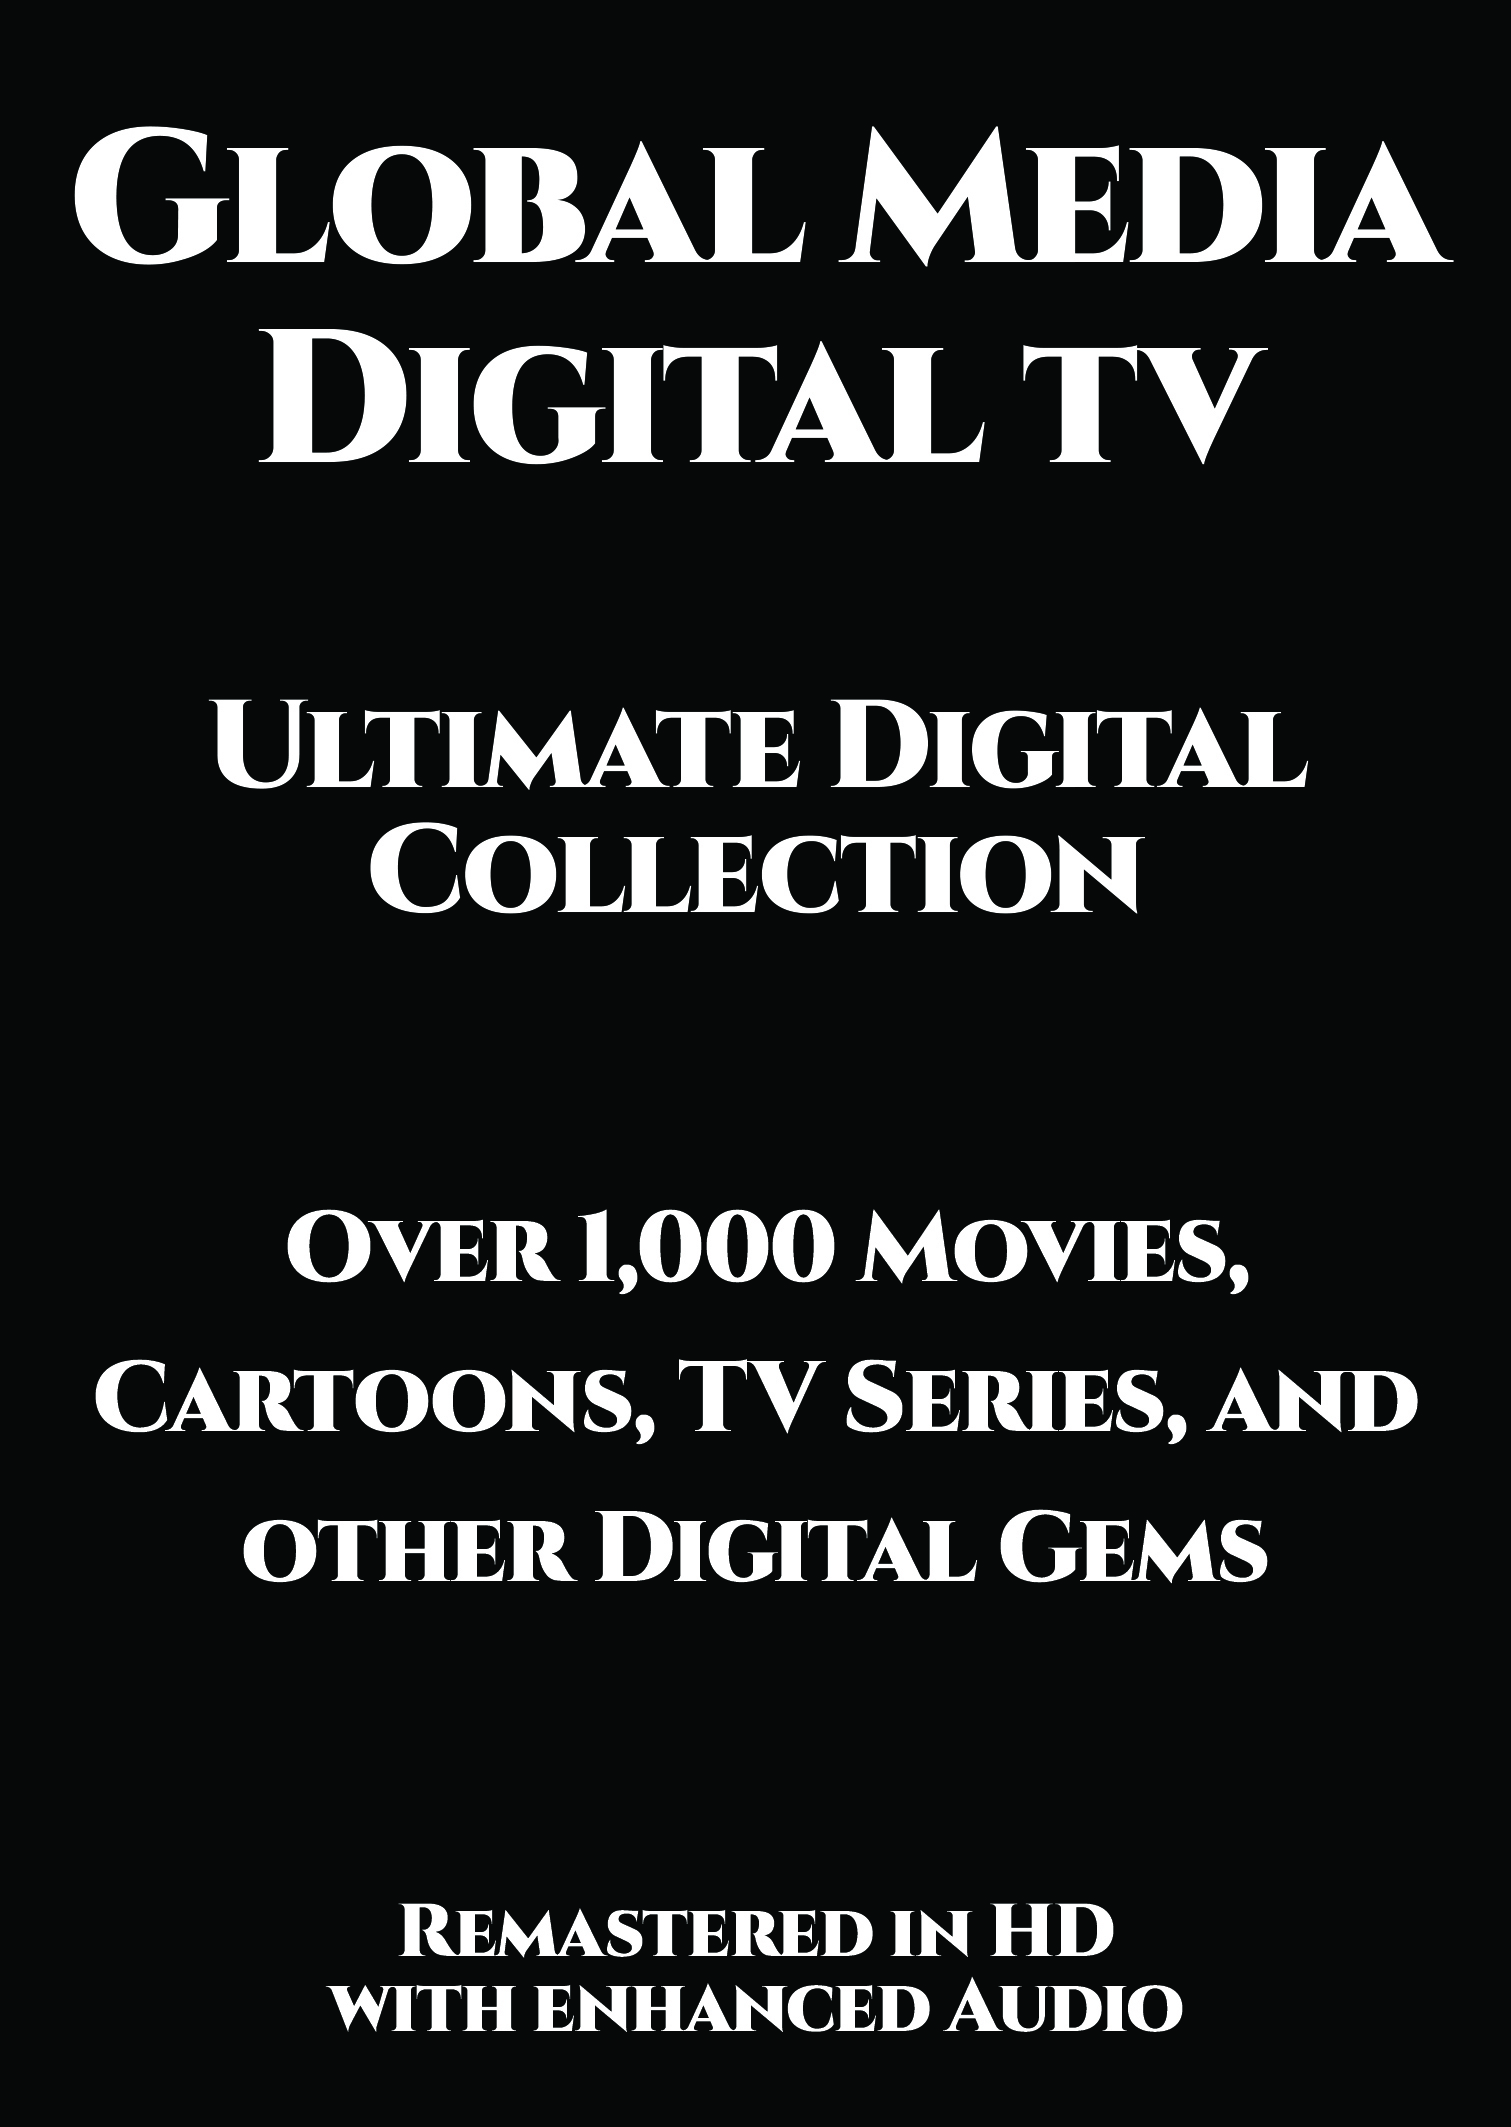 Global Media Digital TV, Ultimate Digital Collection